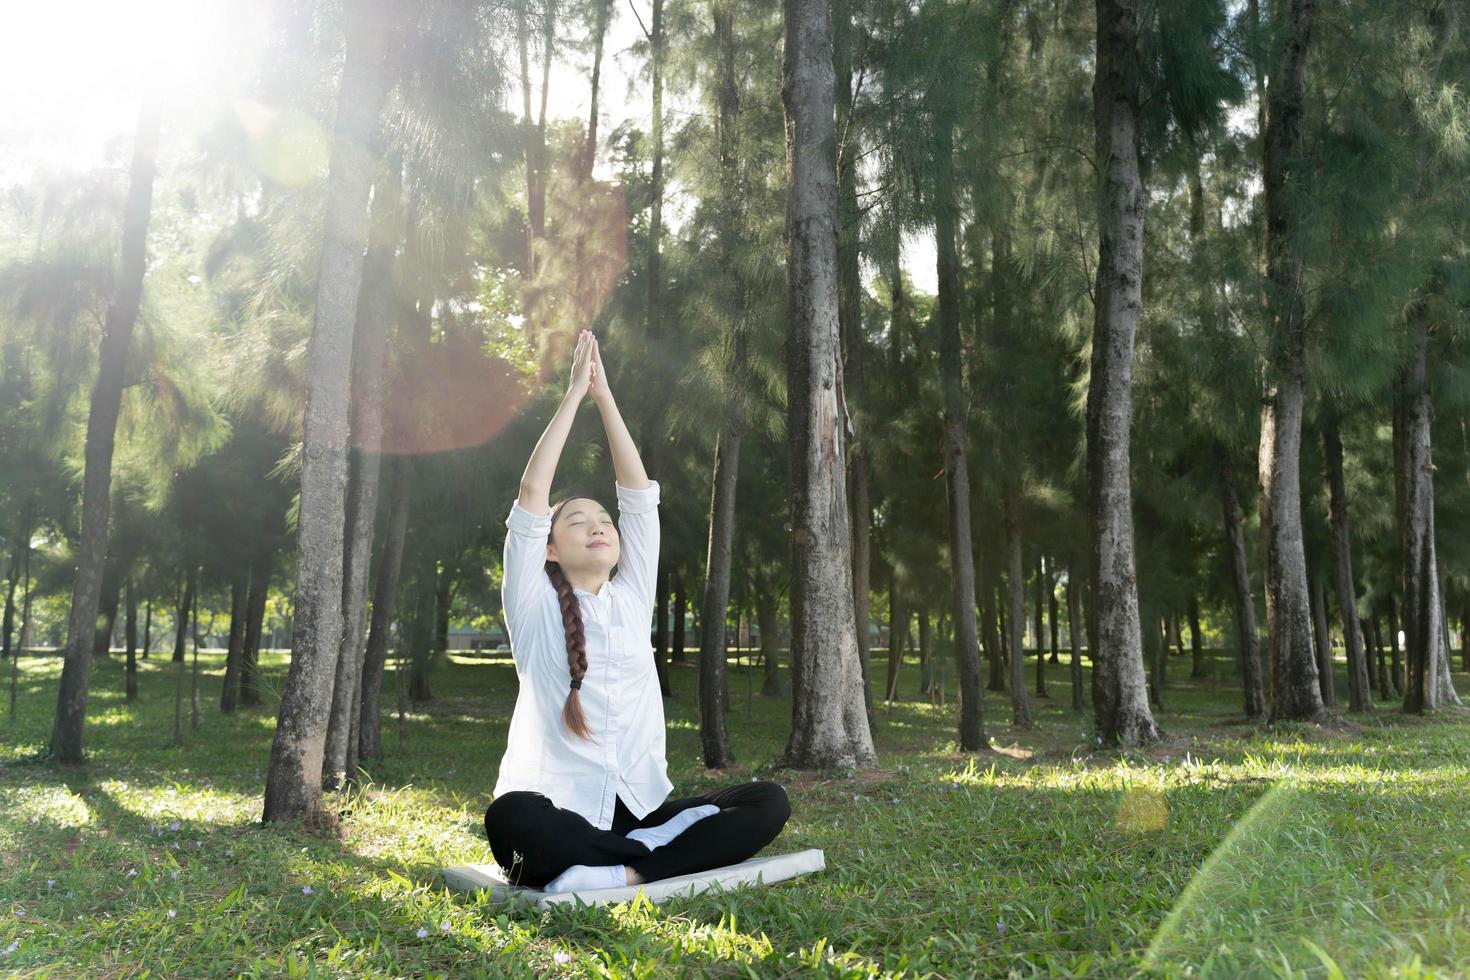 meisje doet yoga pose in het park in de ochtend met zonlicht. foto